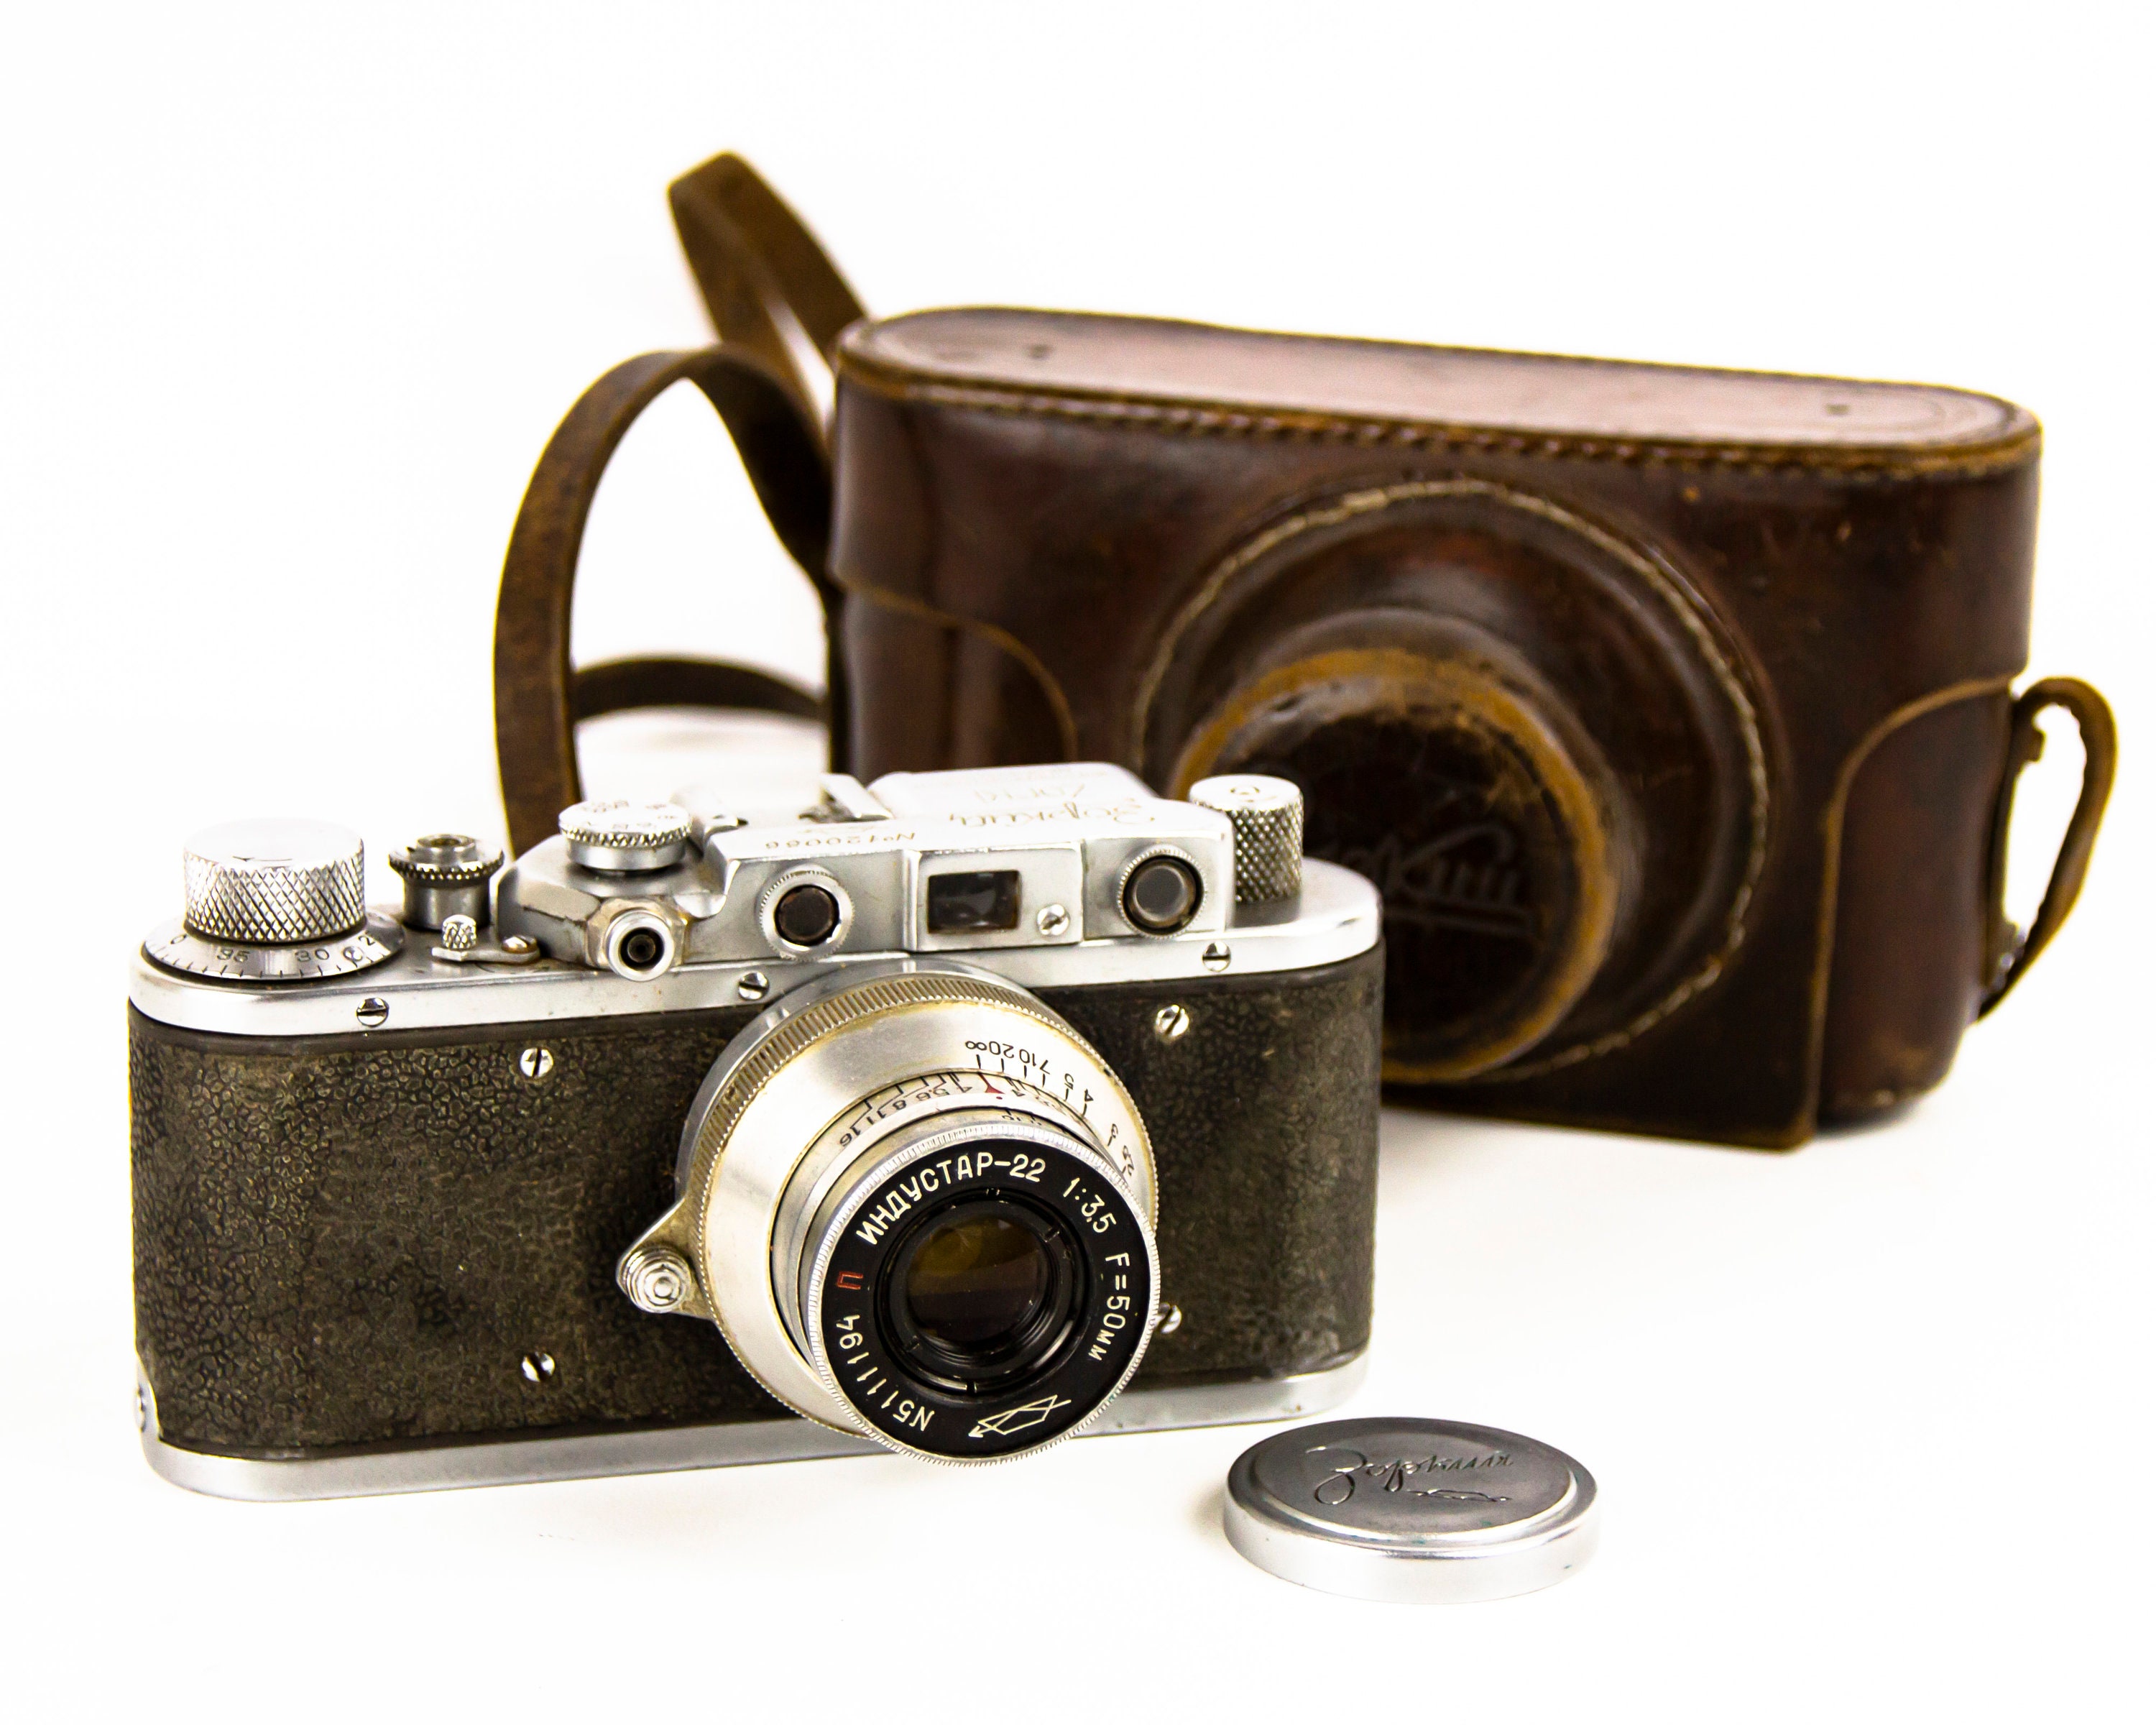 Leica IIIf RD, Industar 22 50mm ライカ